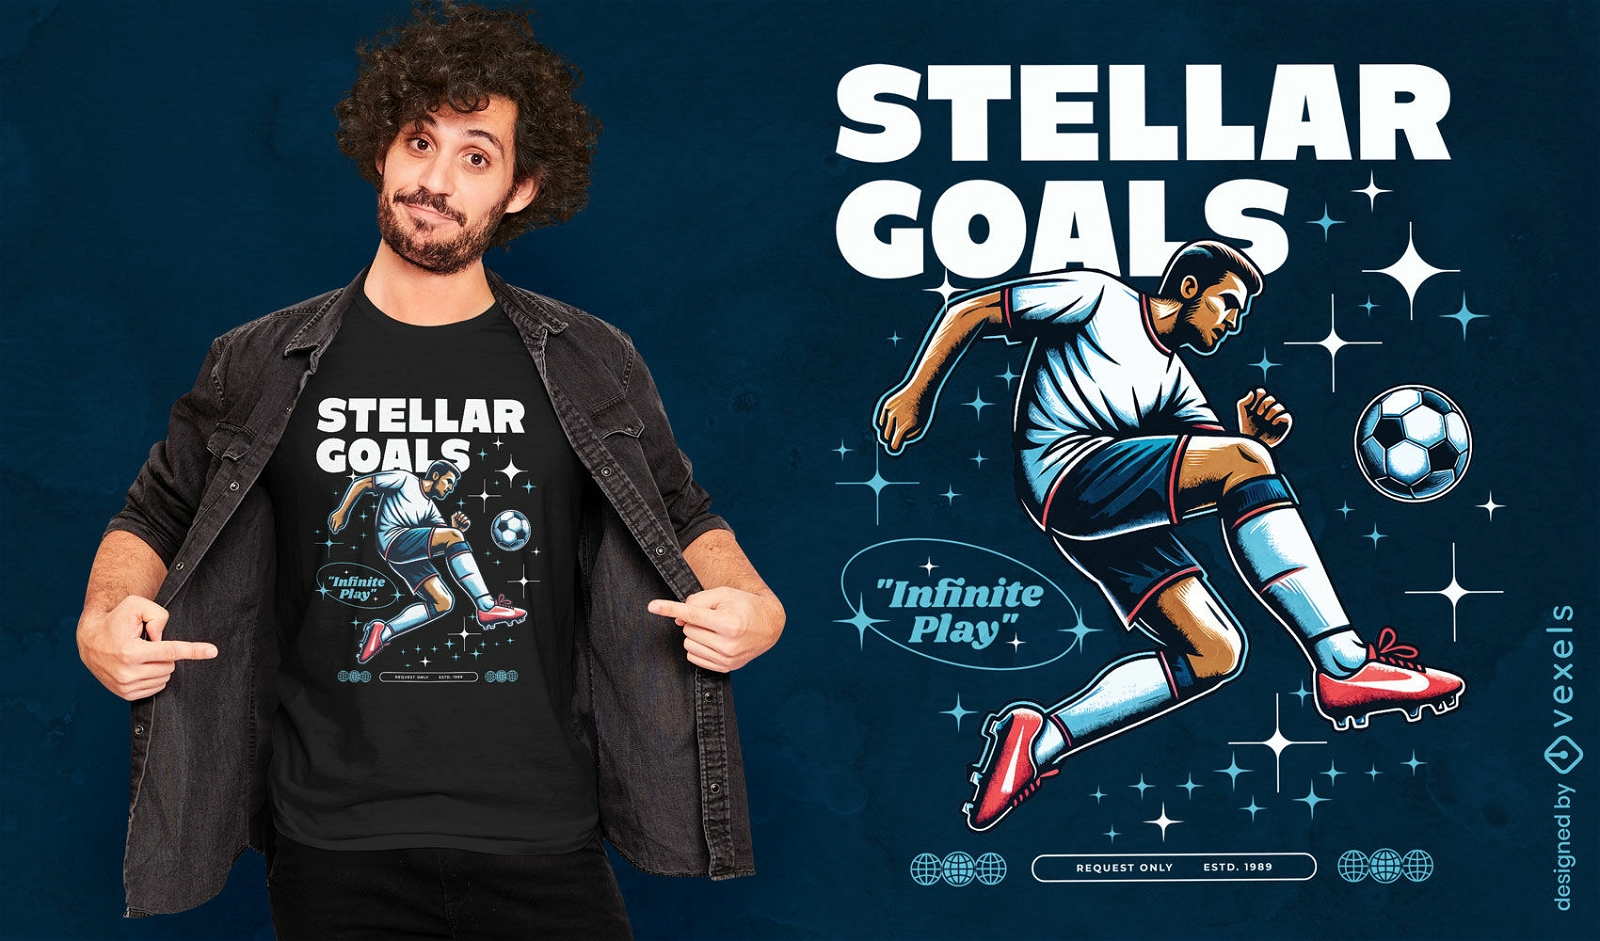 Stellar goals t-shirt design